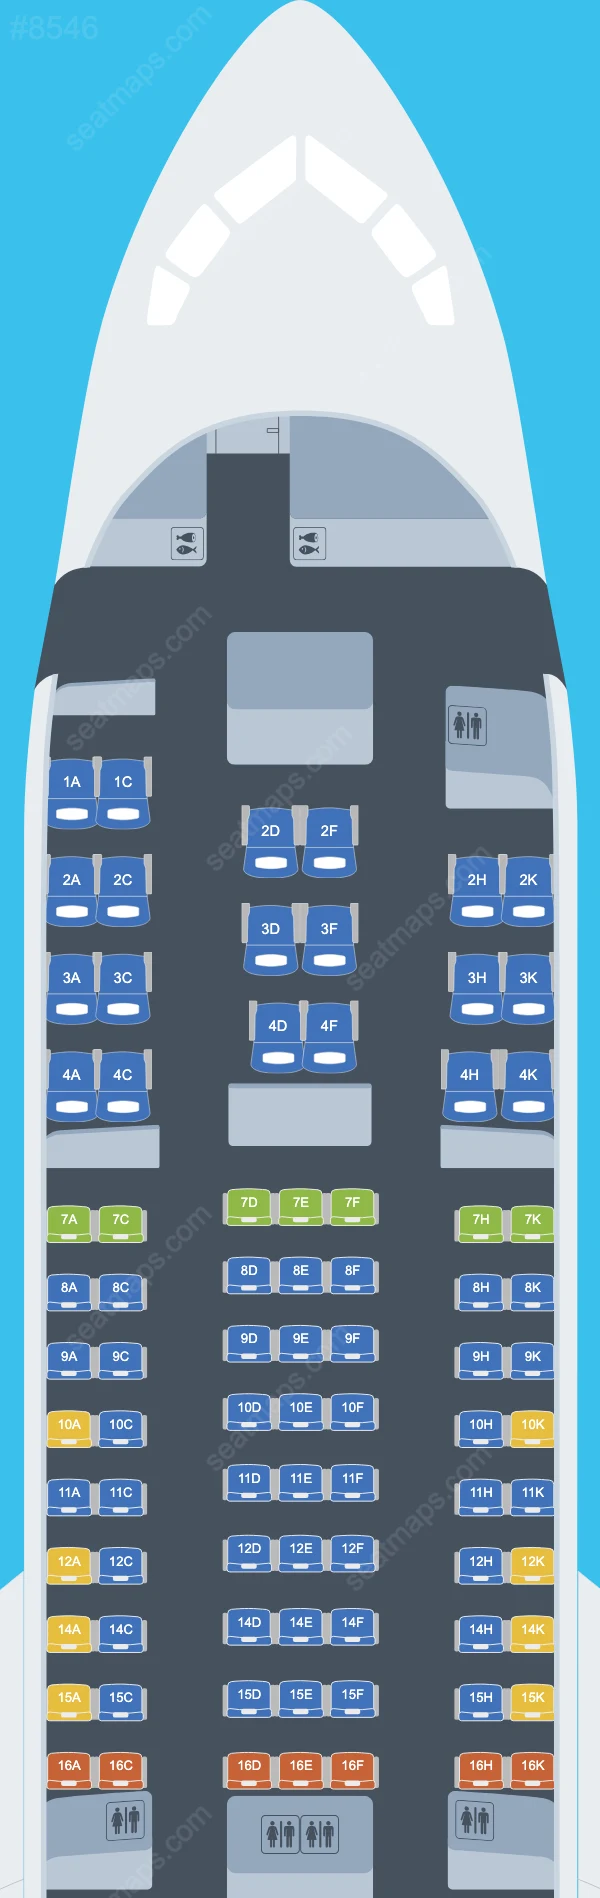 Omni Air International Boeing 767 Plan de Salle 767-200 ER V.2